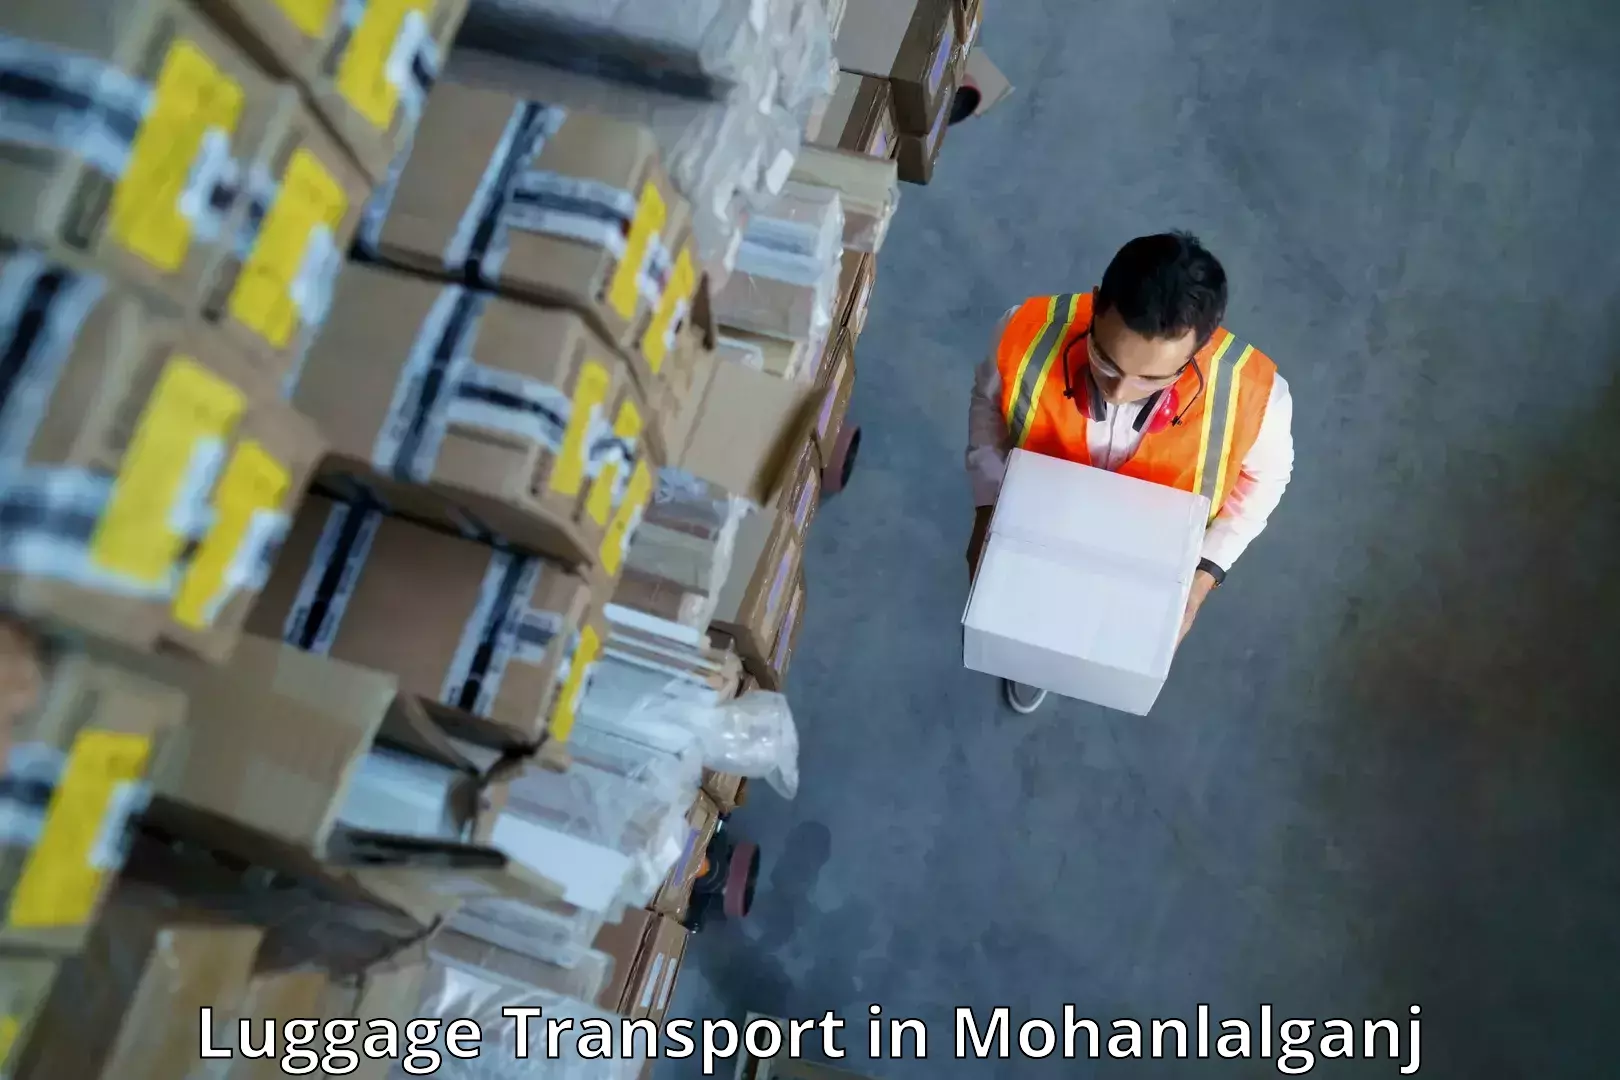 Luggage shipment processing in Mohanlalganj